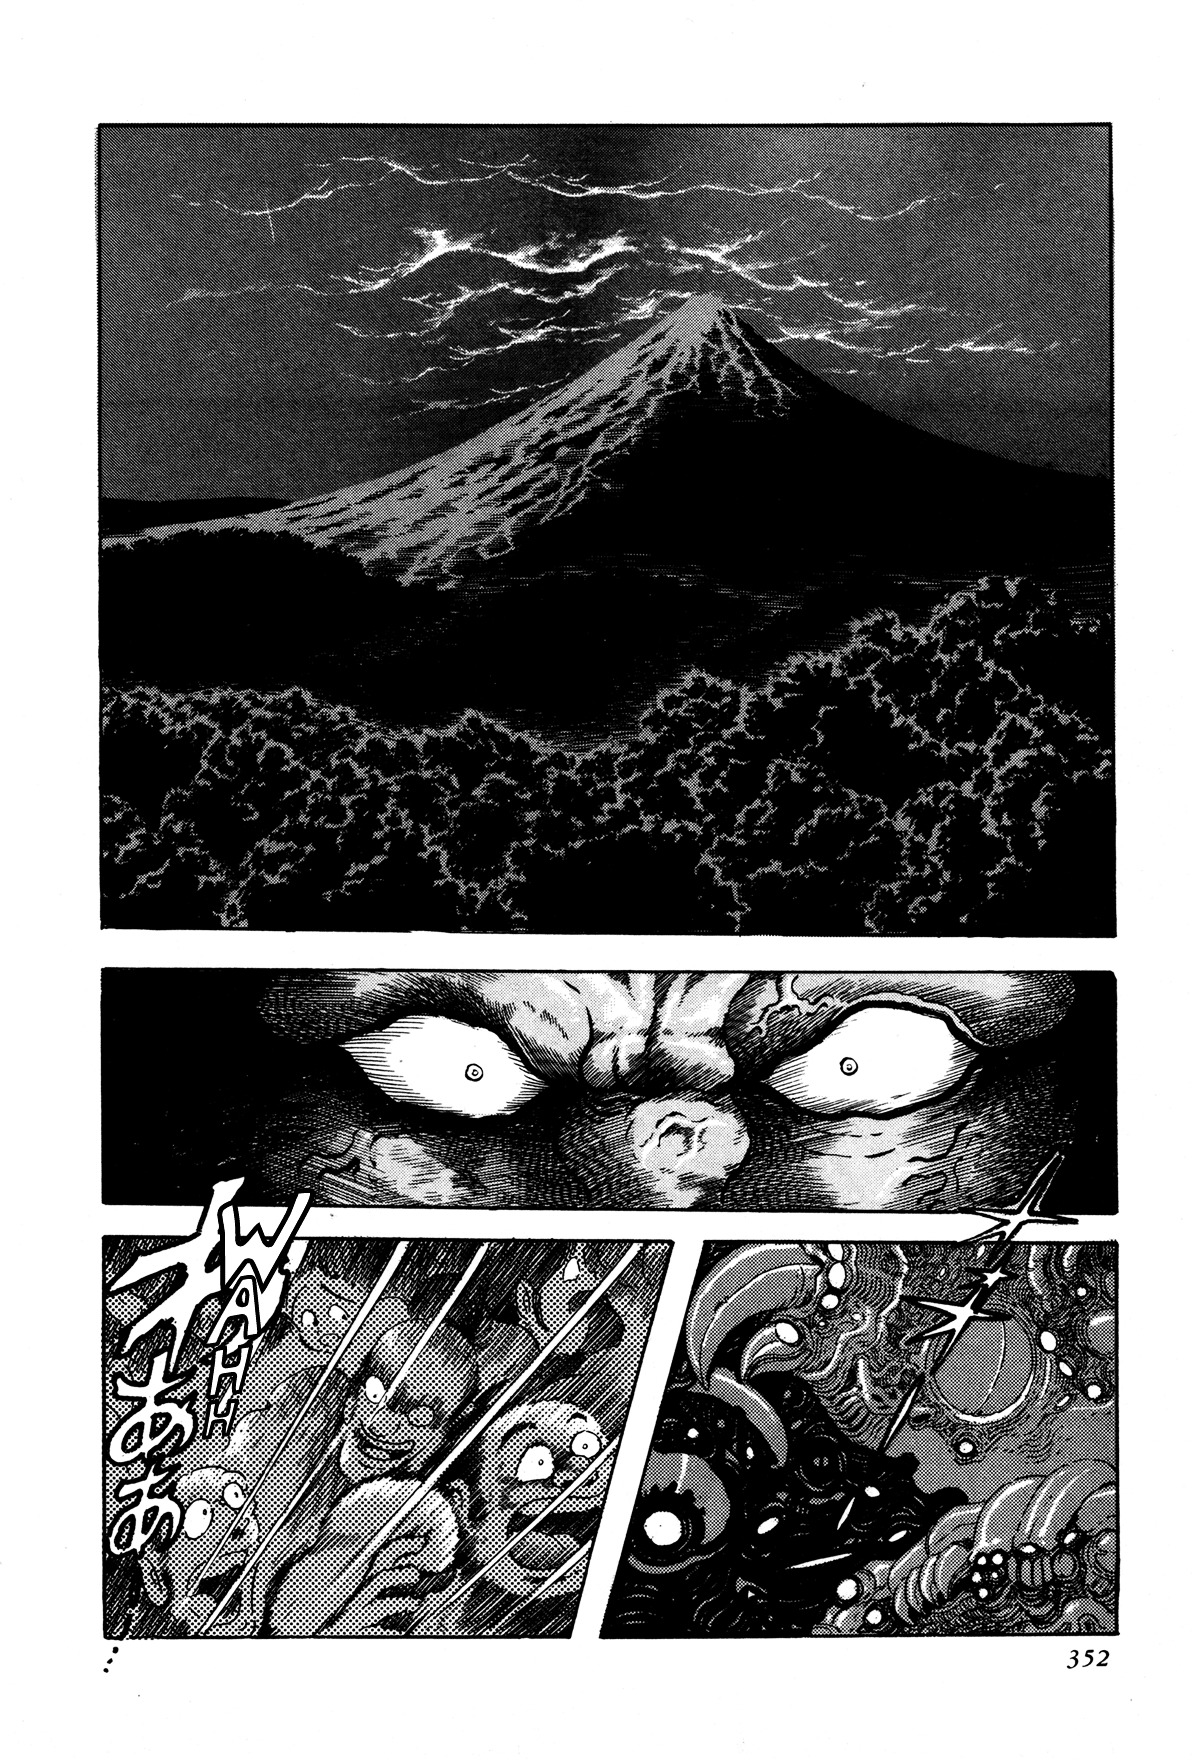 Kyomu Senki - Page 1